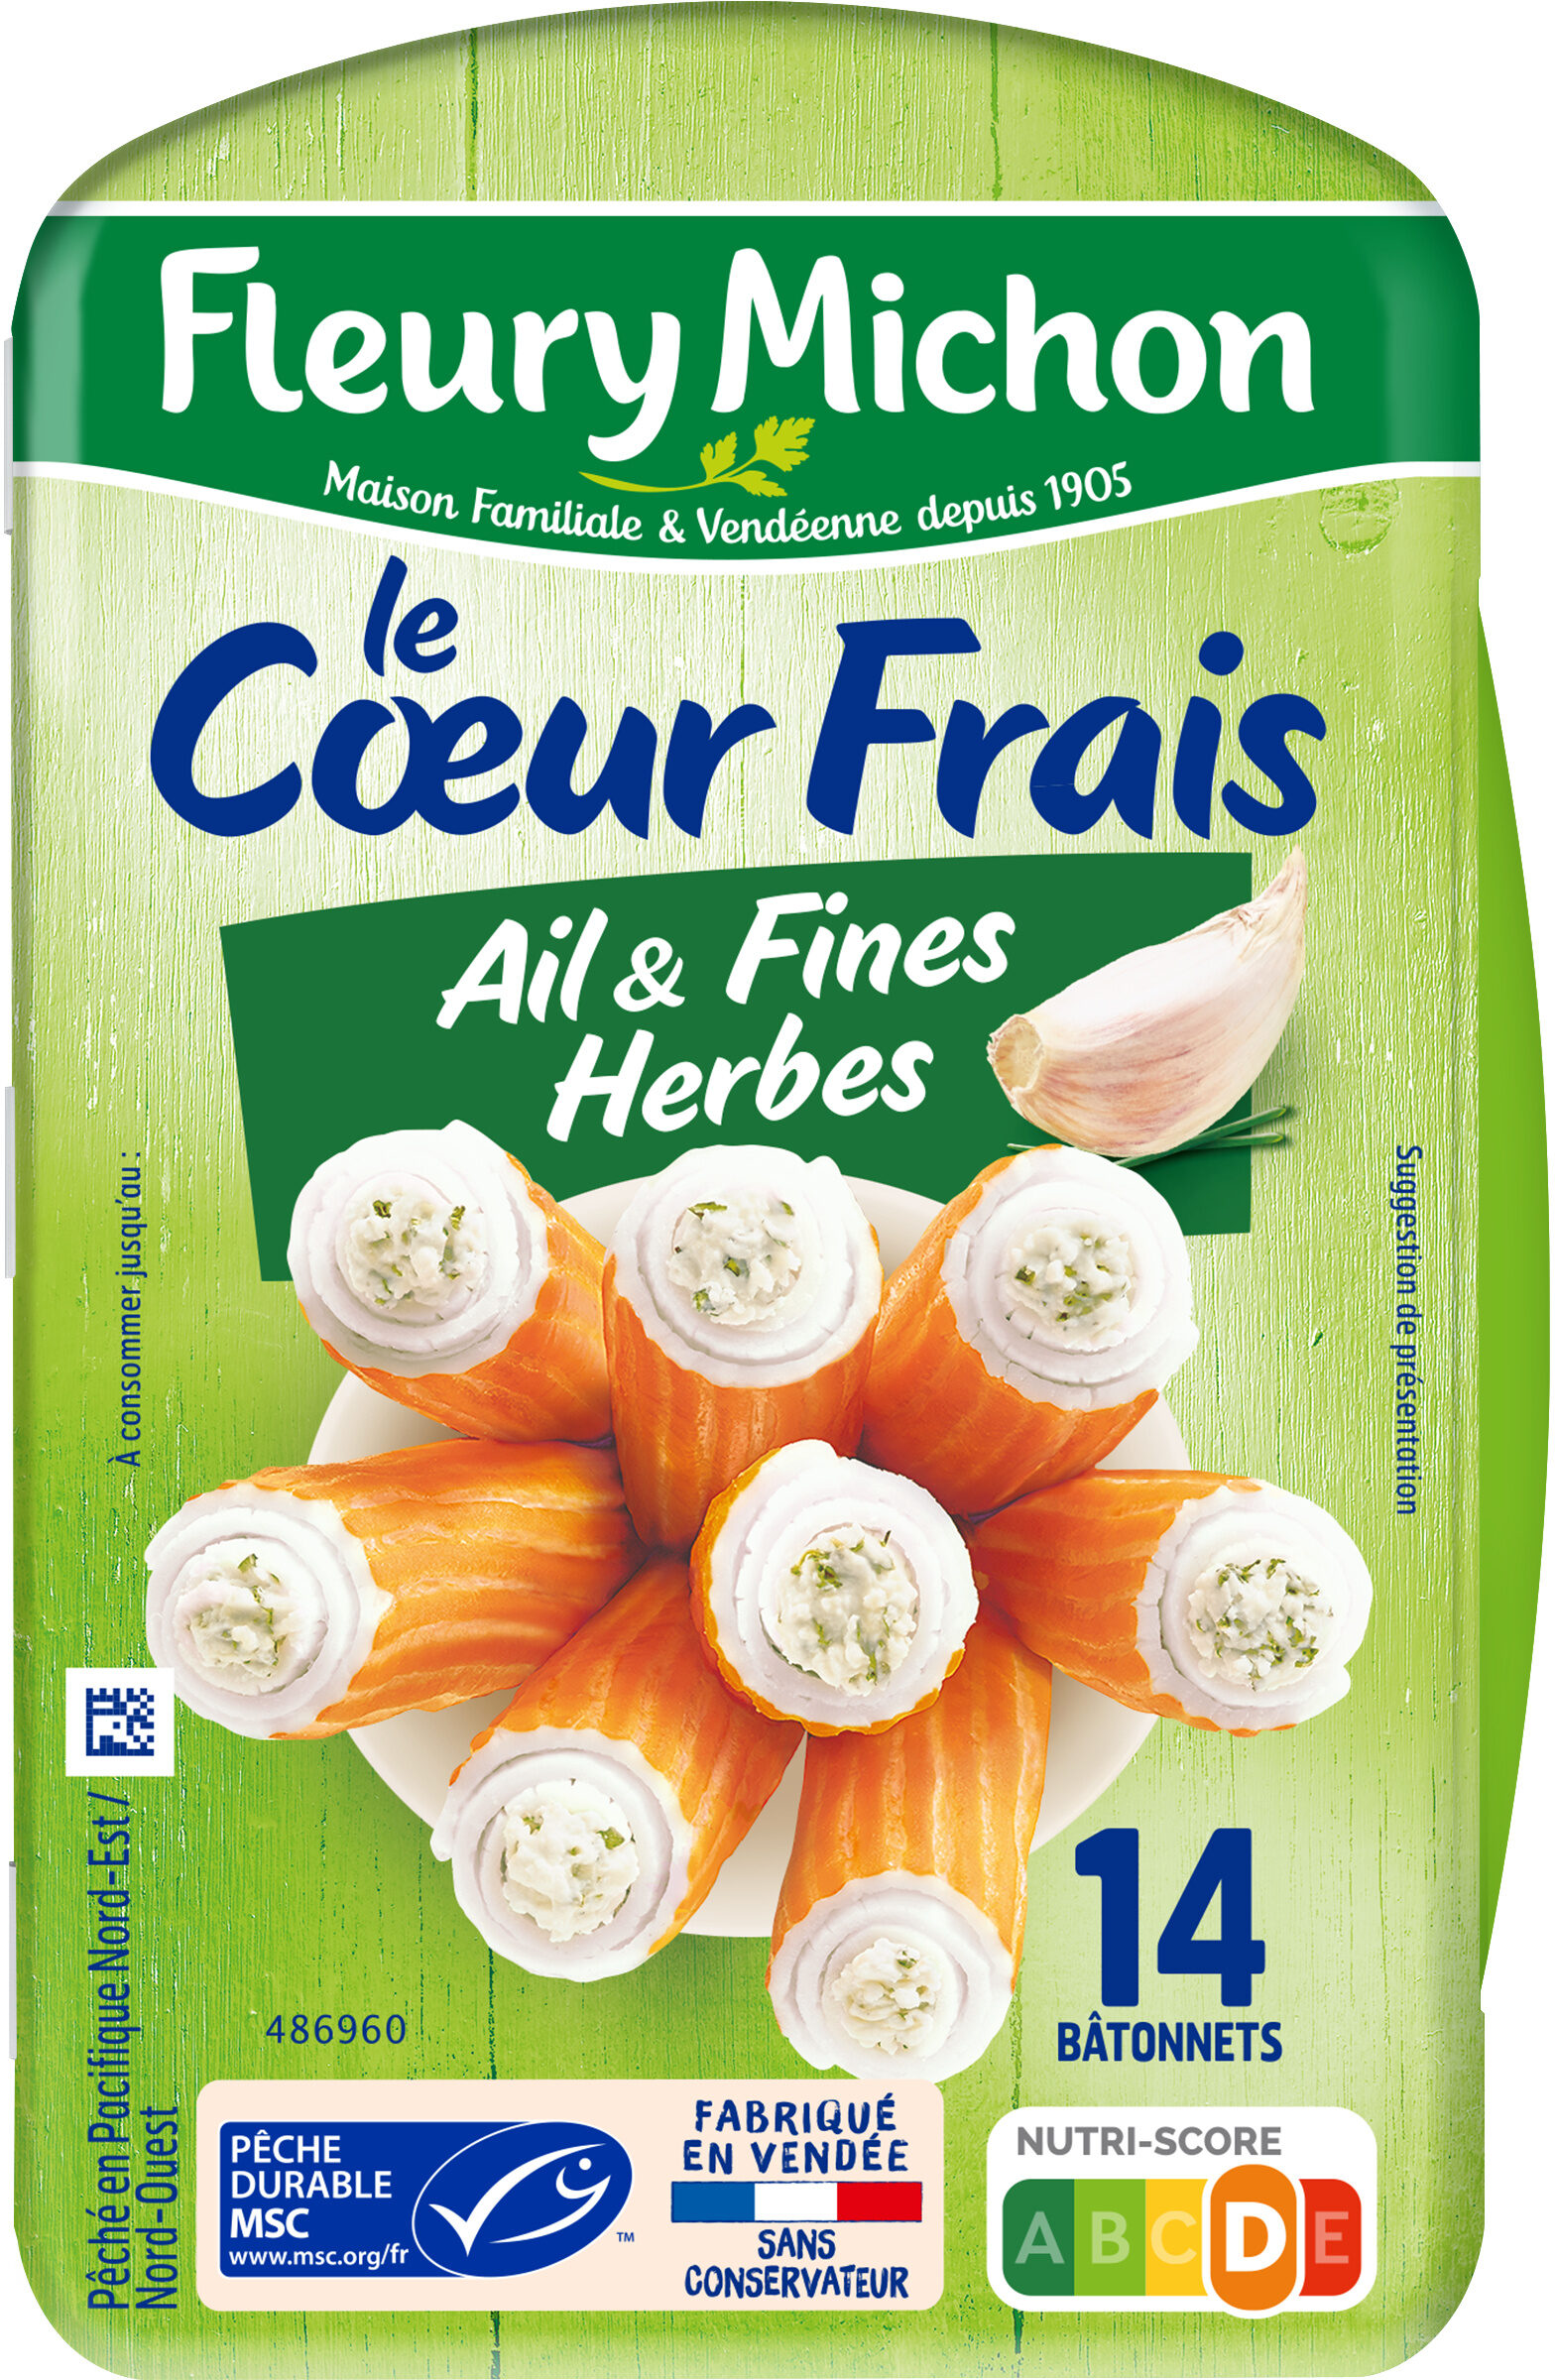 Le Coeur Frais - Ail et Fines herbes - Product - fr